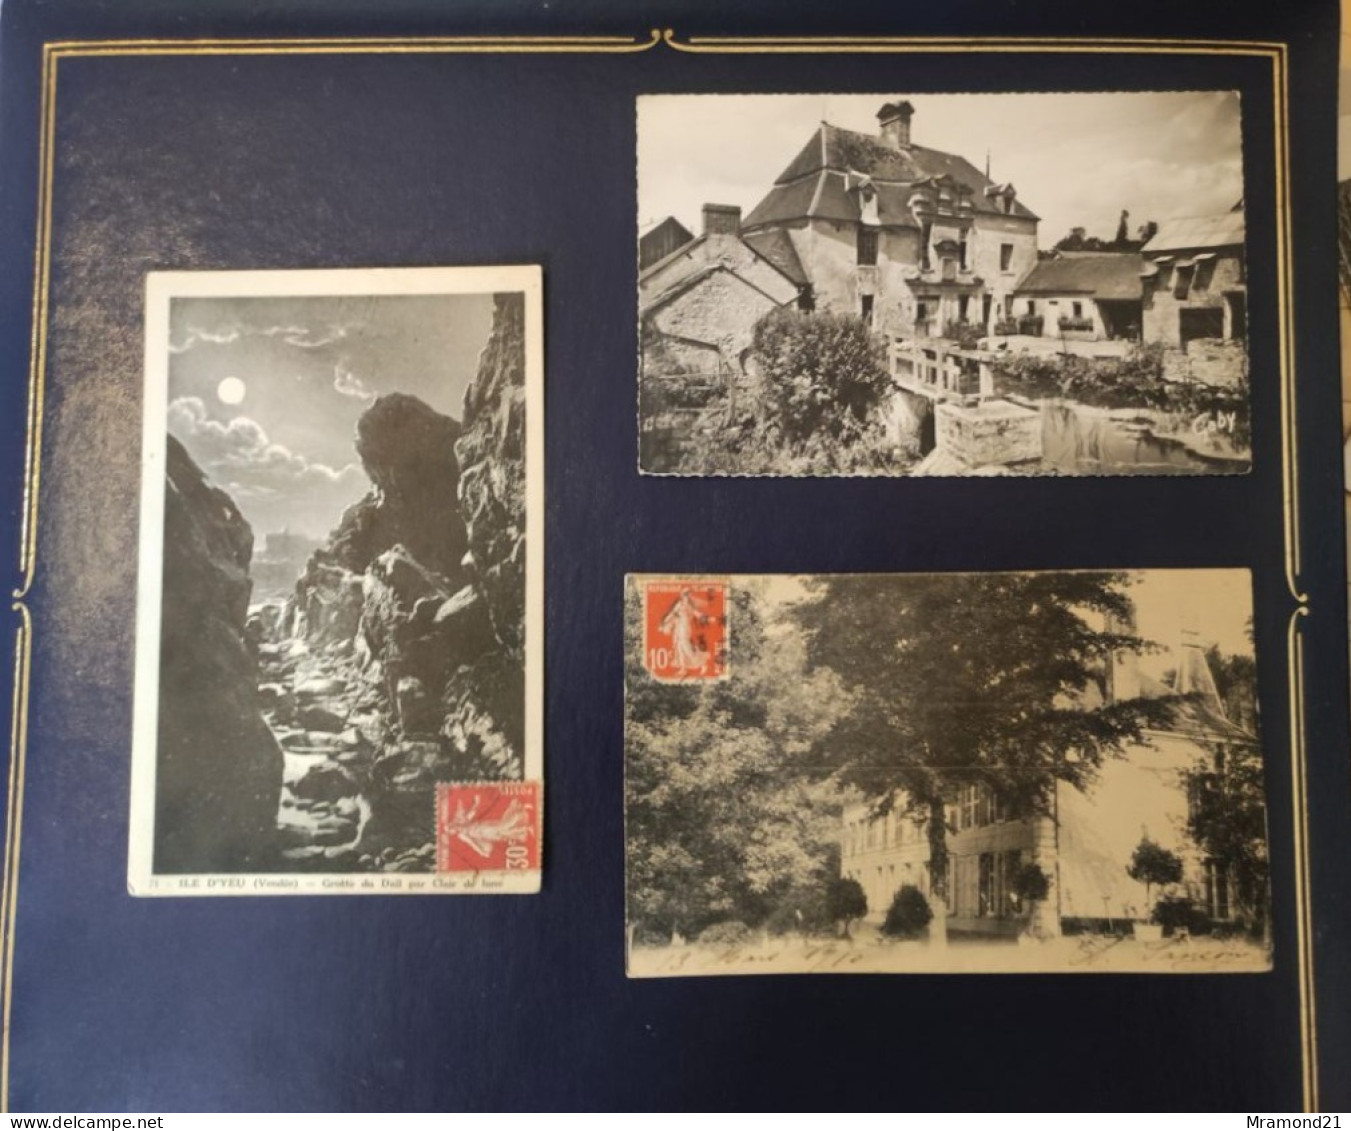 Lot de 49 cartes postales anciennes de la France